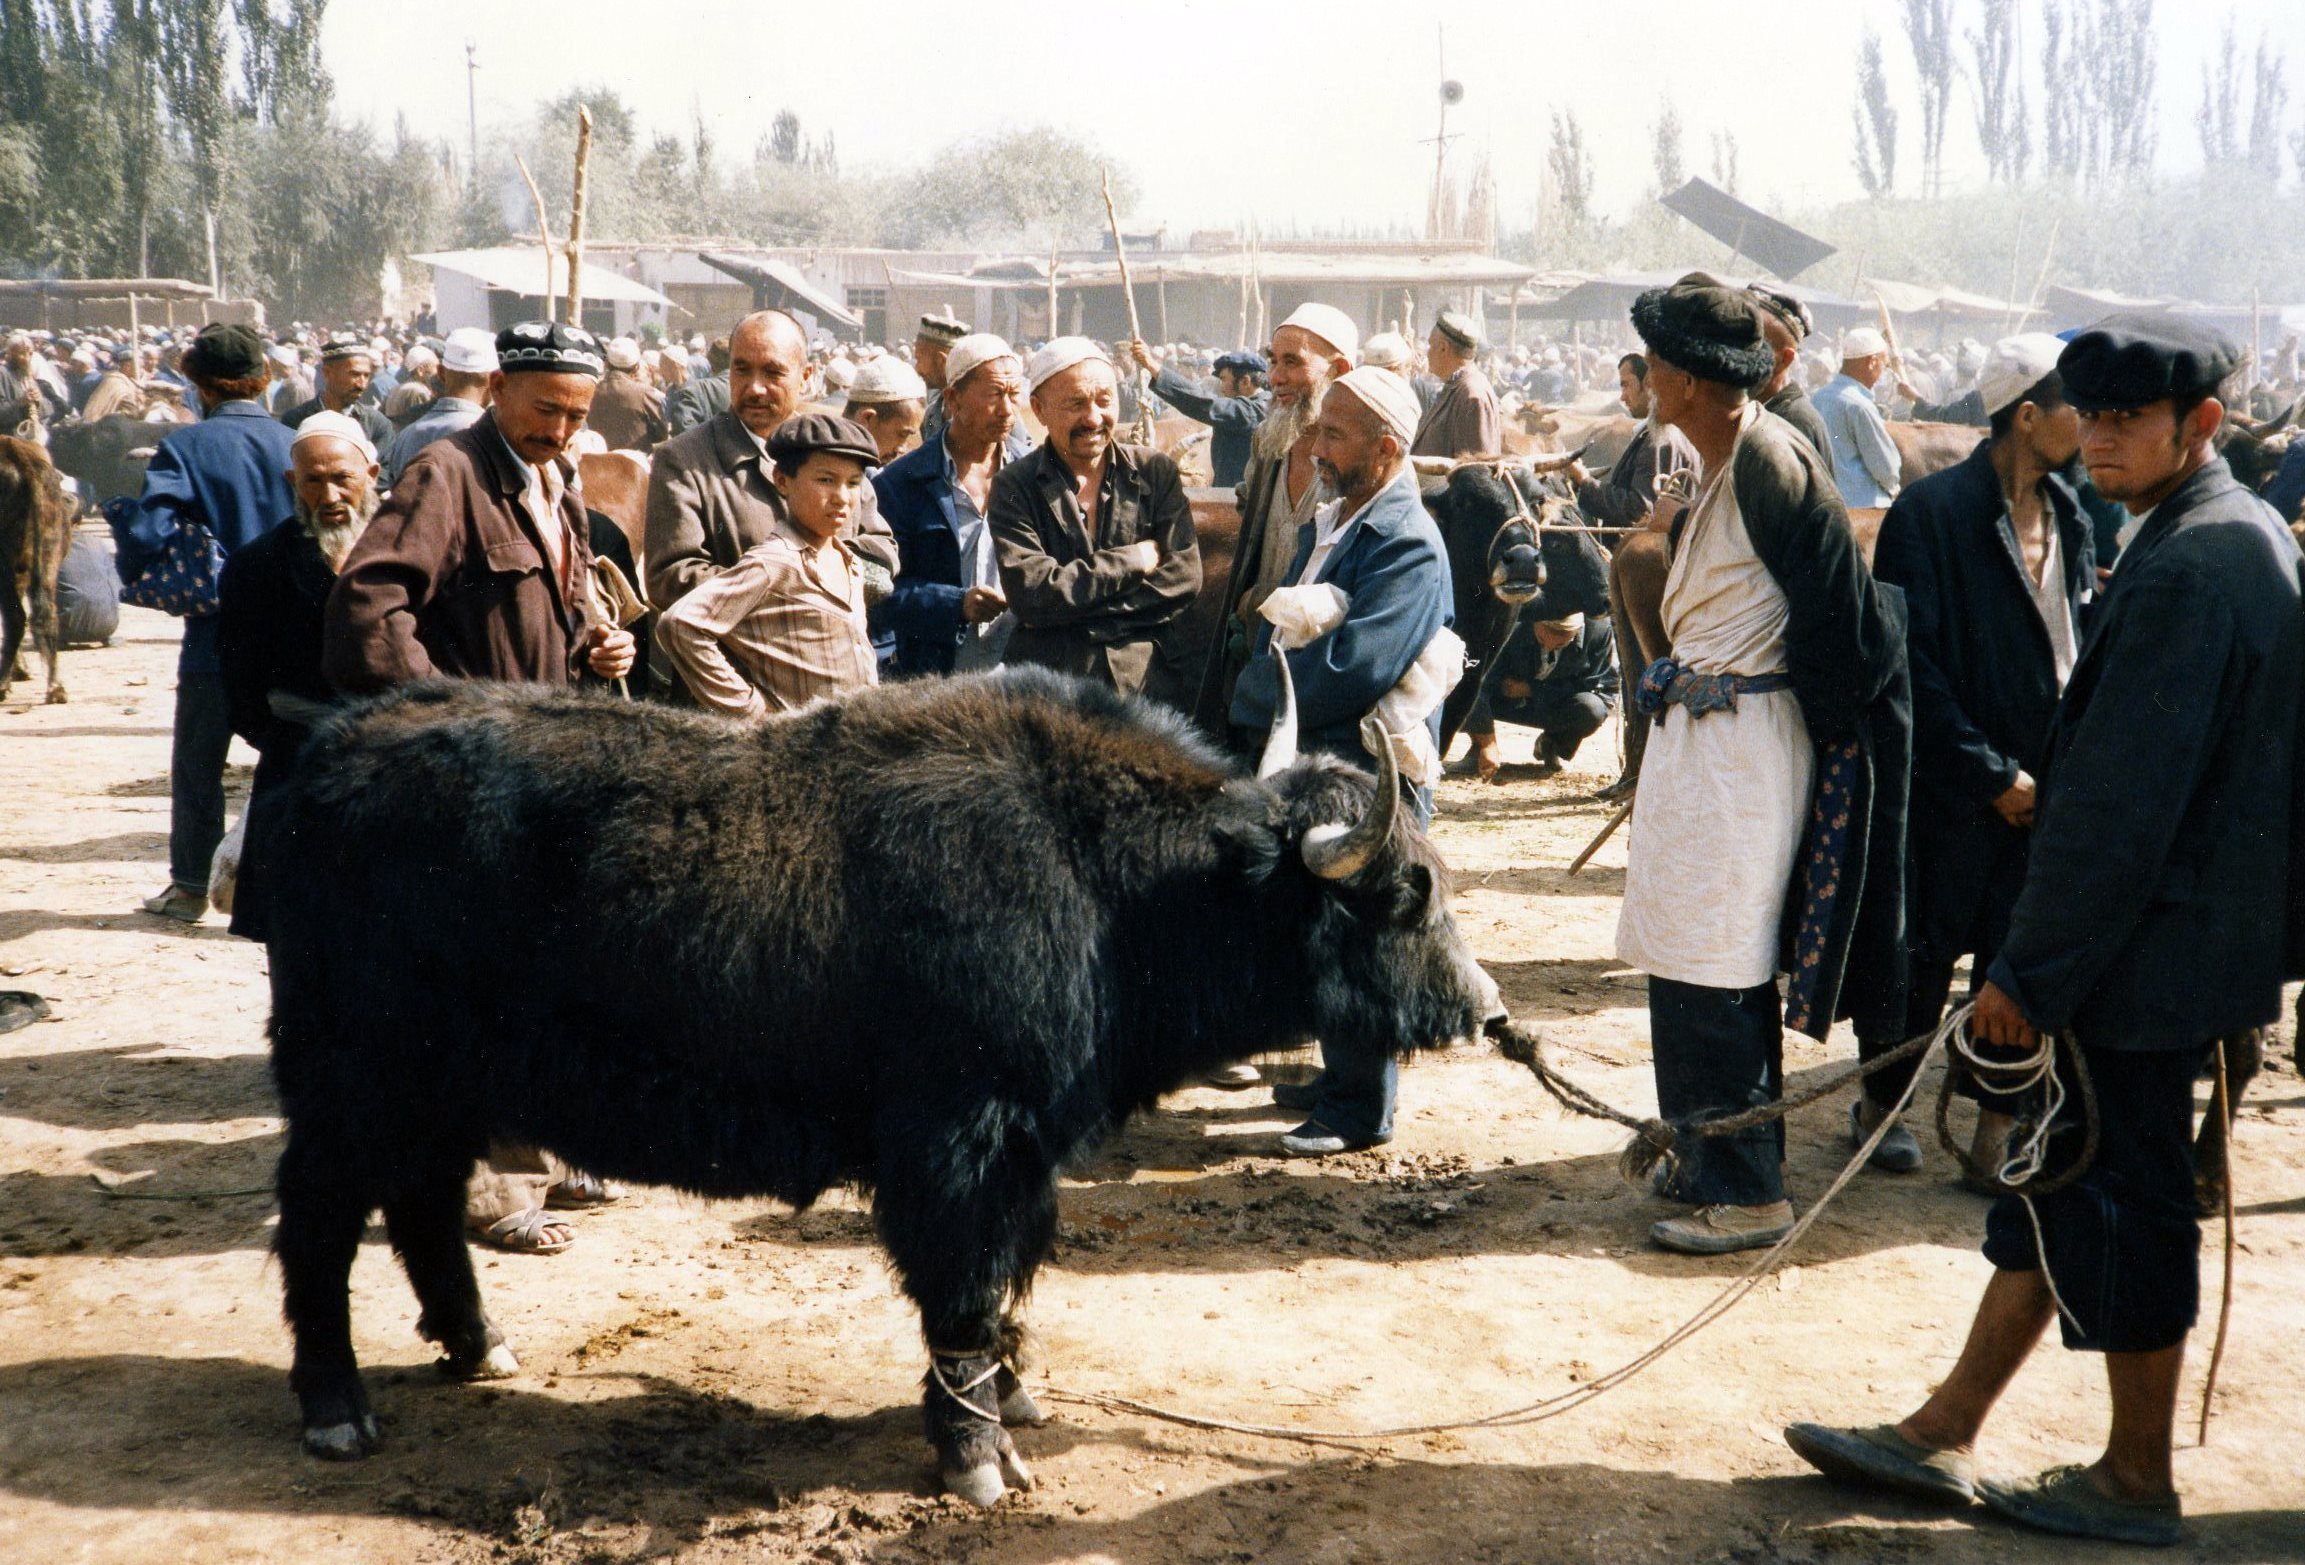 L’industrie du yak, nouvel voie de développement